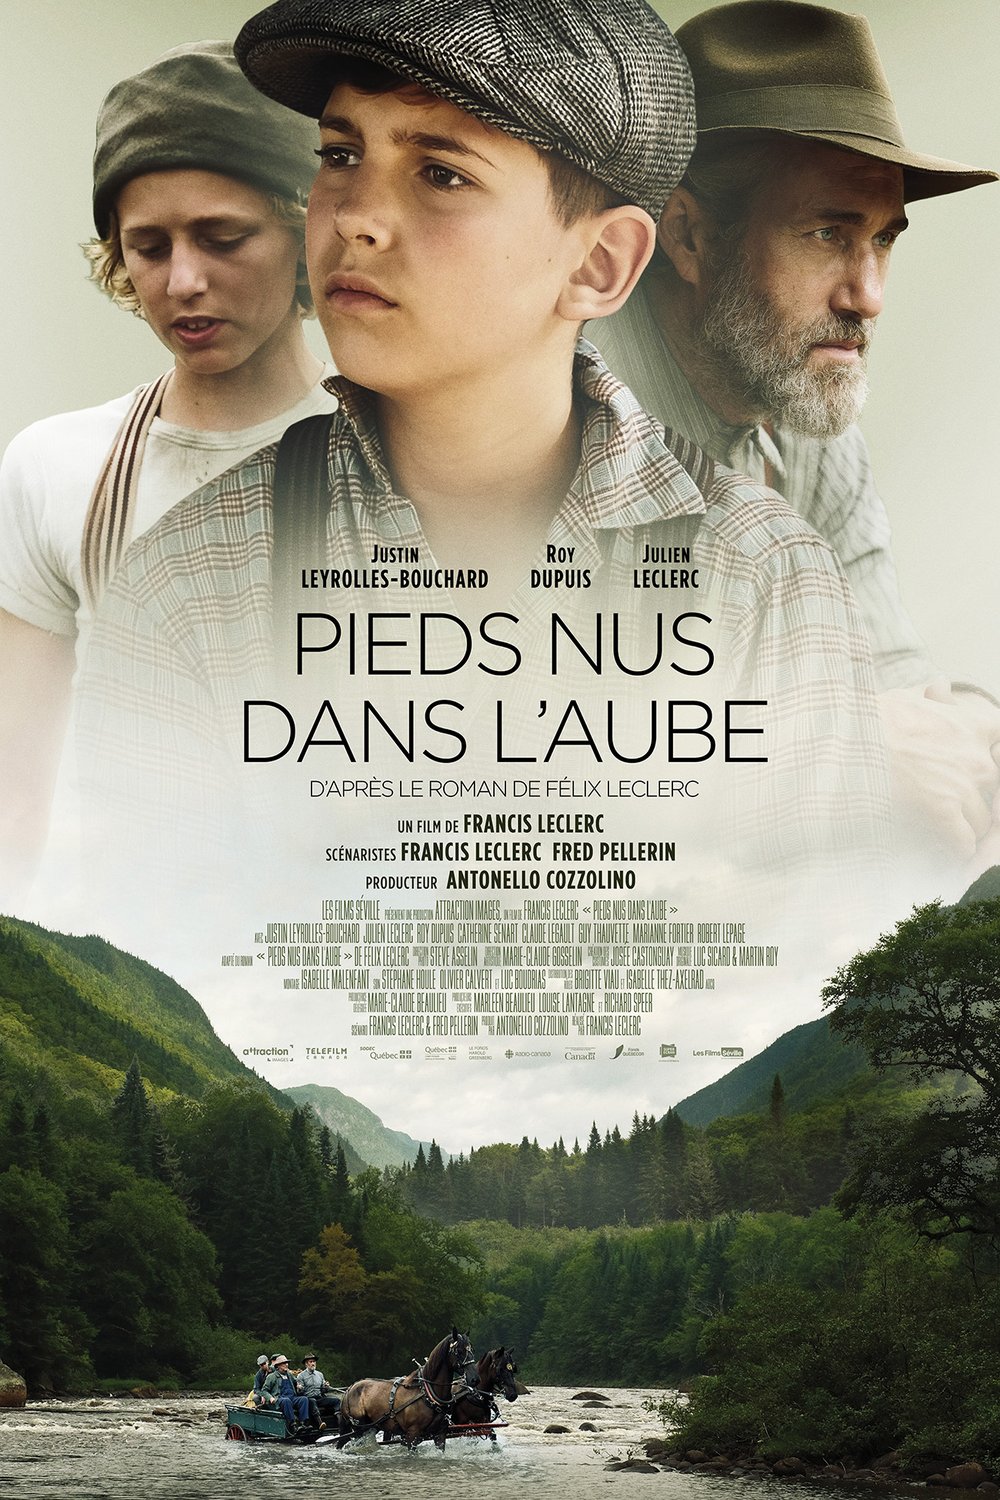 Poster of the movie Pieds nus dans l'aube